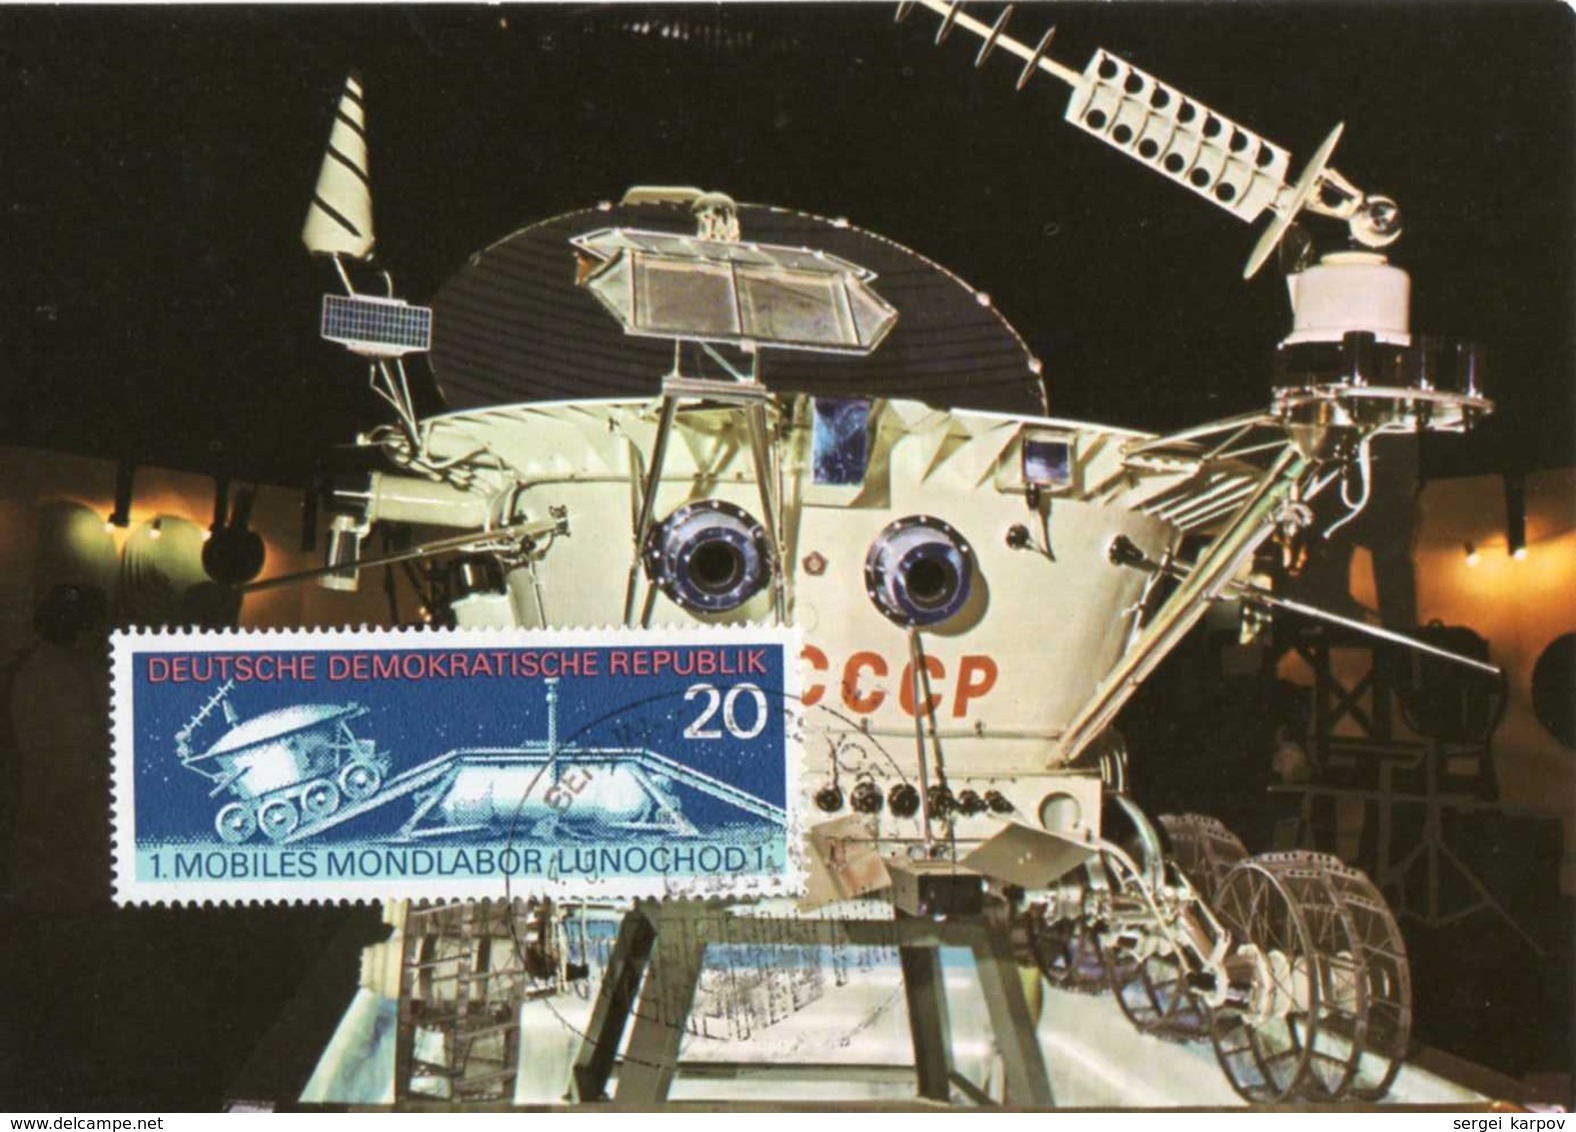 Germany (DDR). Maximum Card. Lunar Lab "Lunochod 1". 1971. - Europe